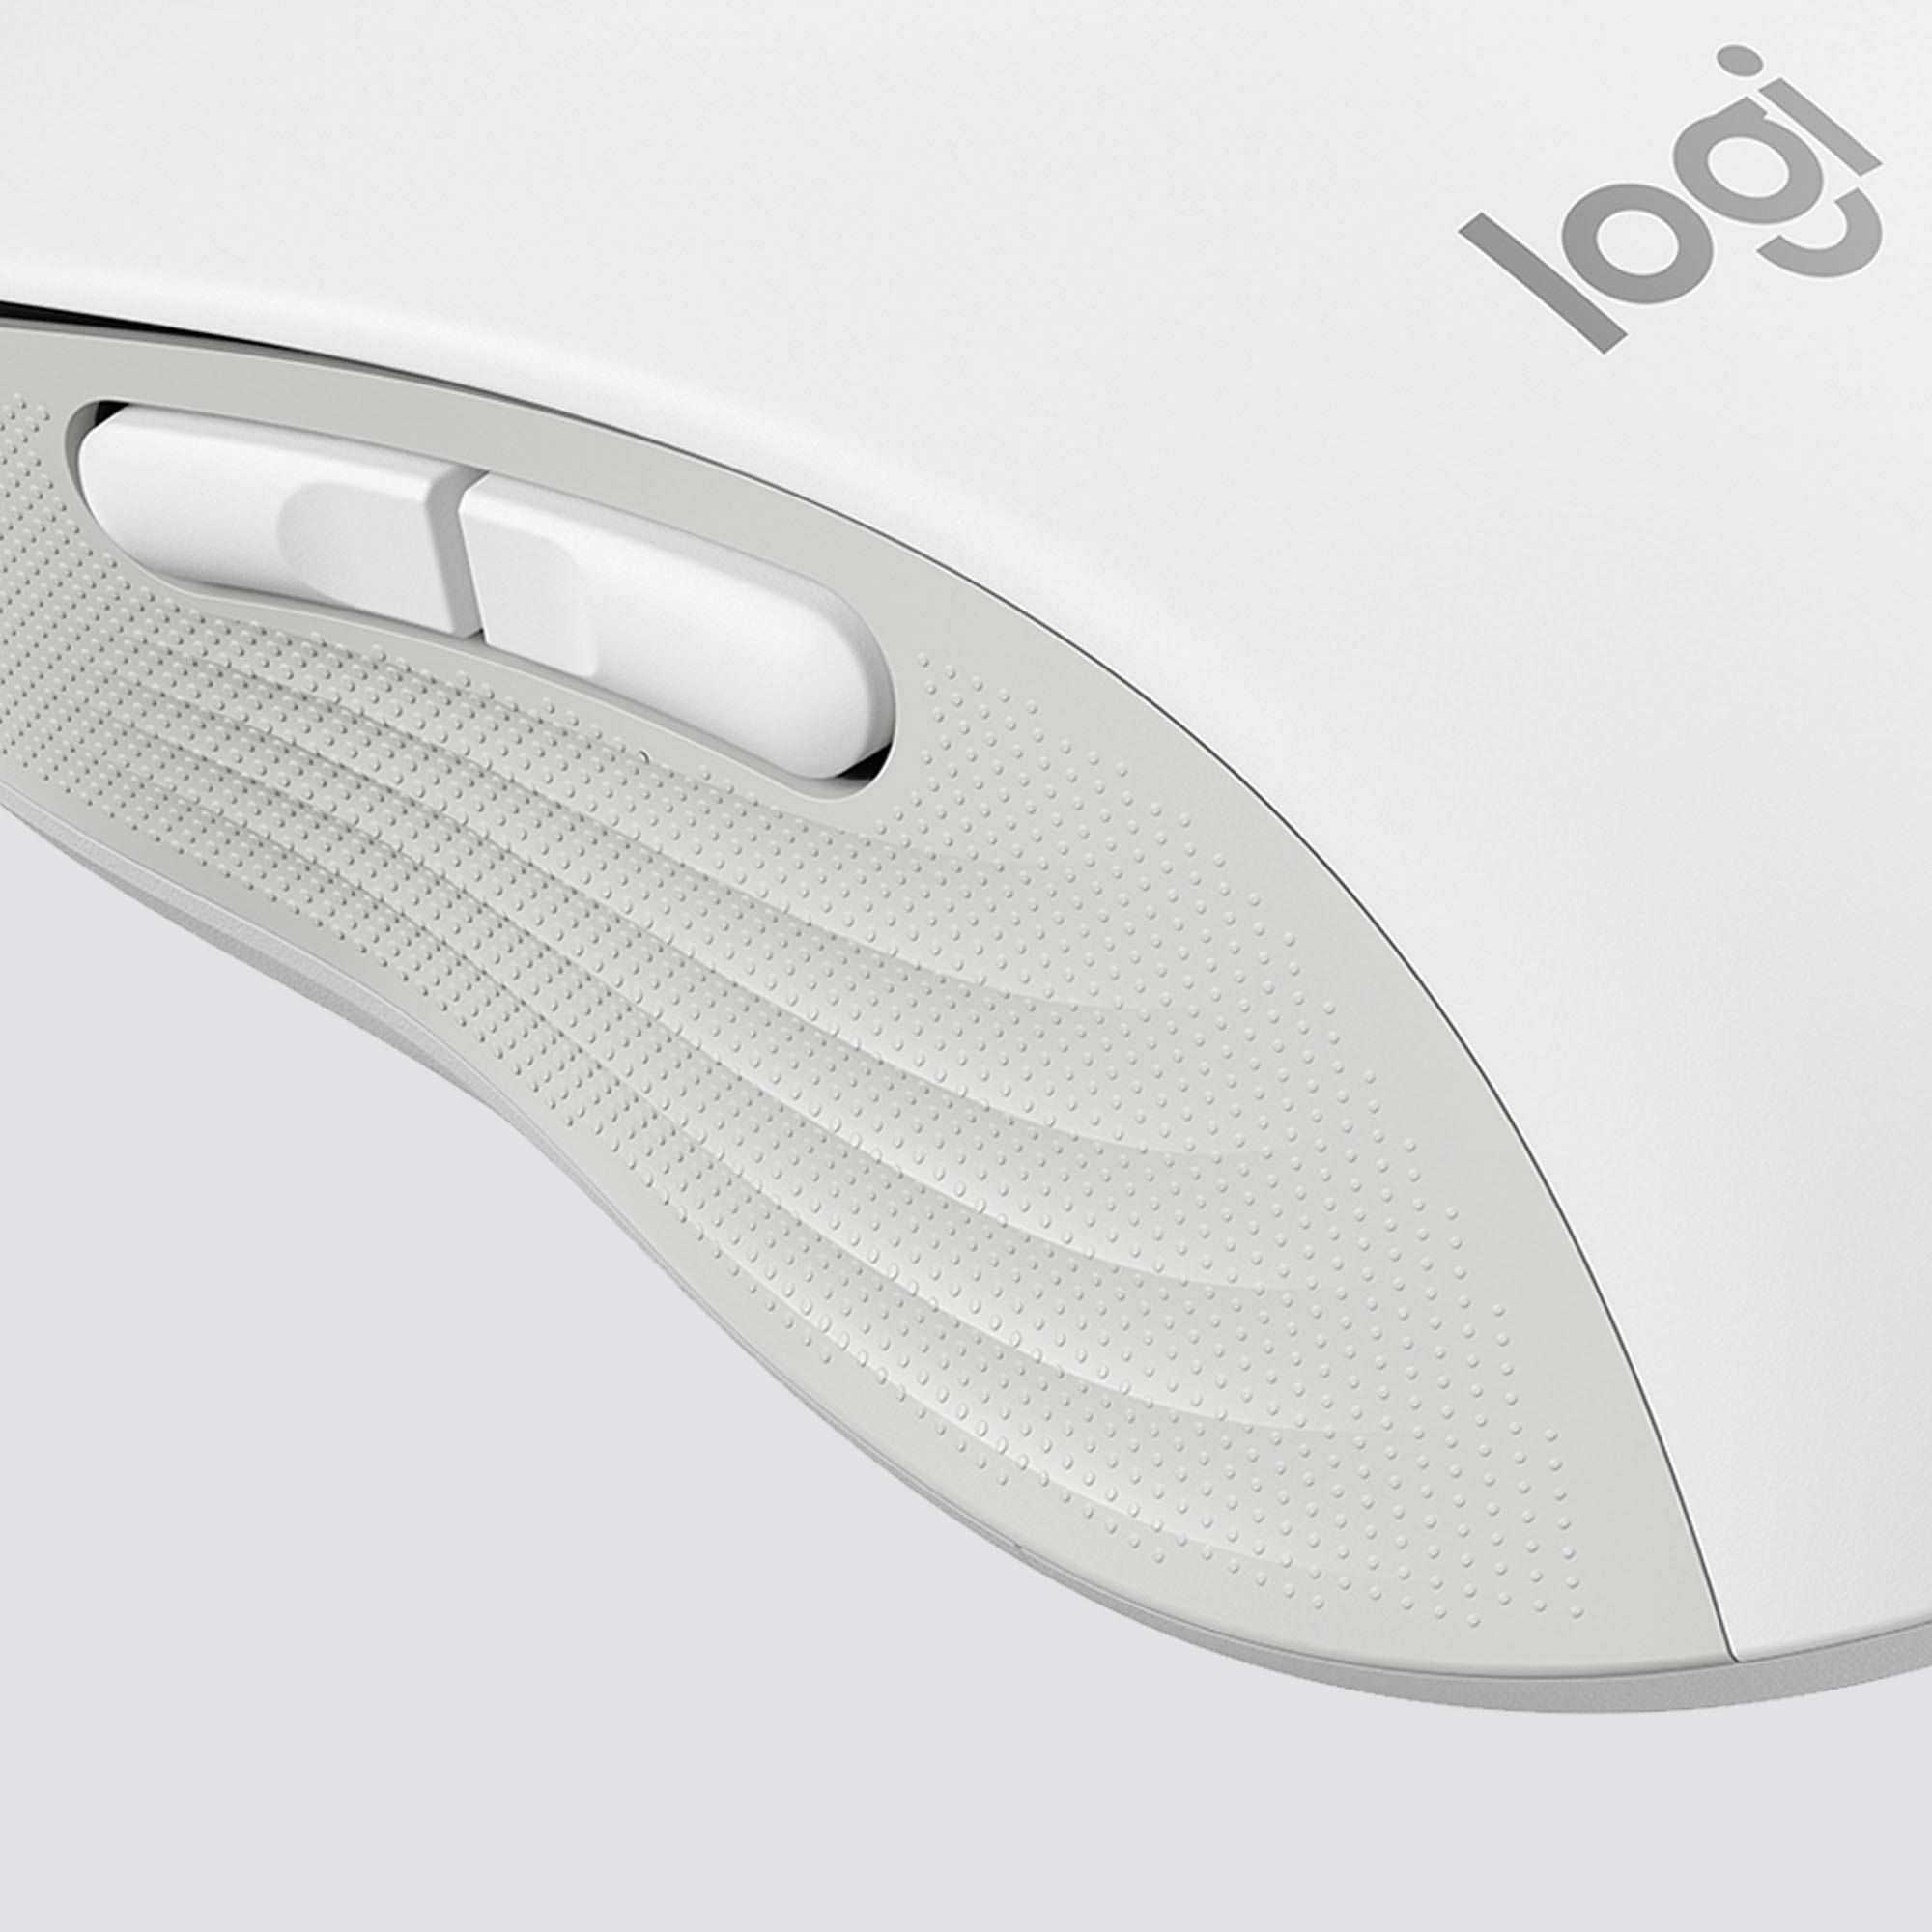 Logitech M650 Signature Wireless Mouse Graphite - Micro Center